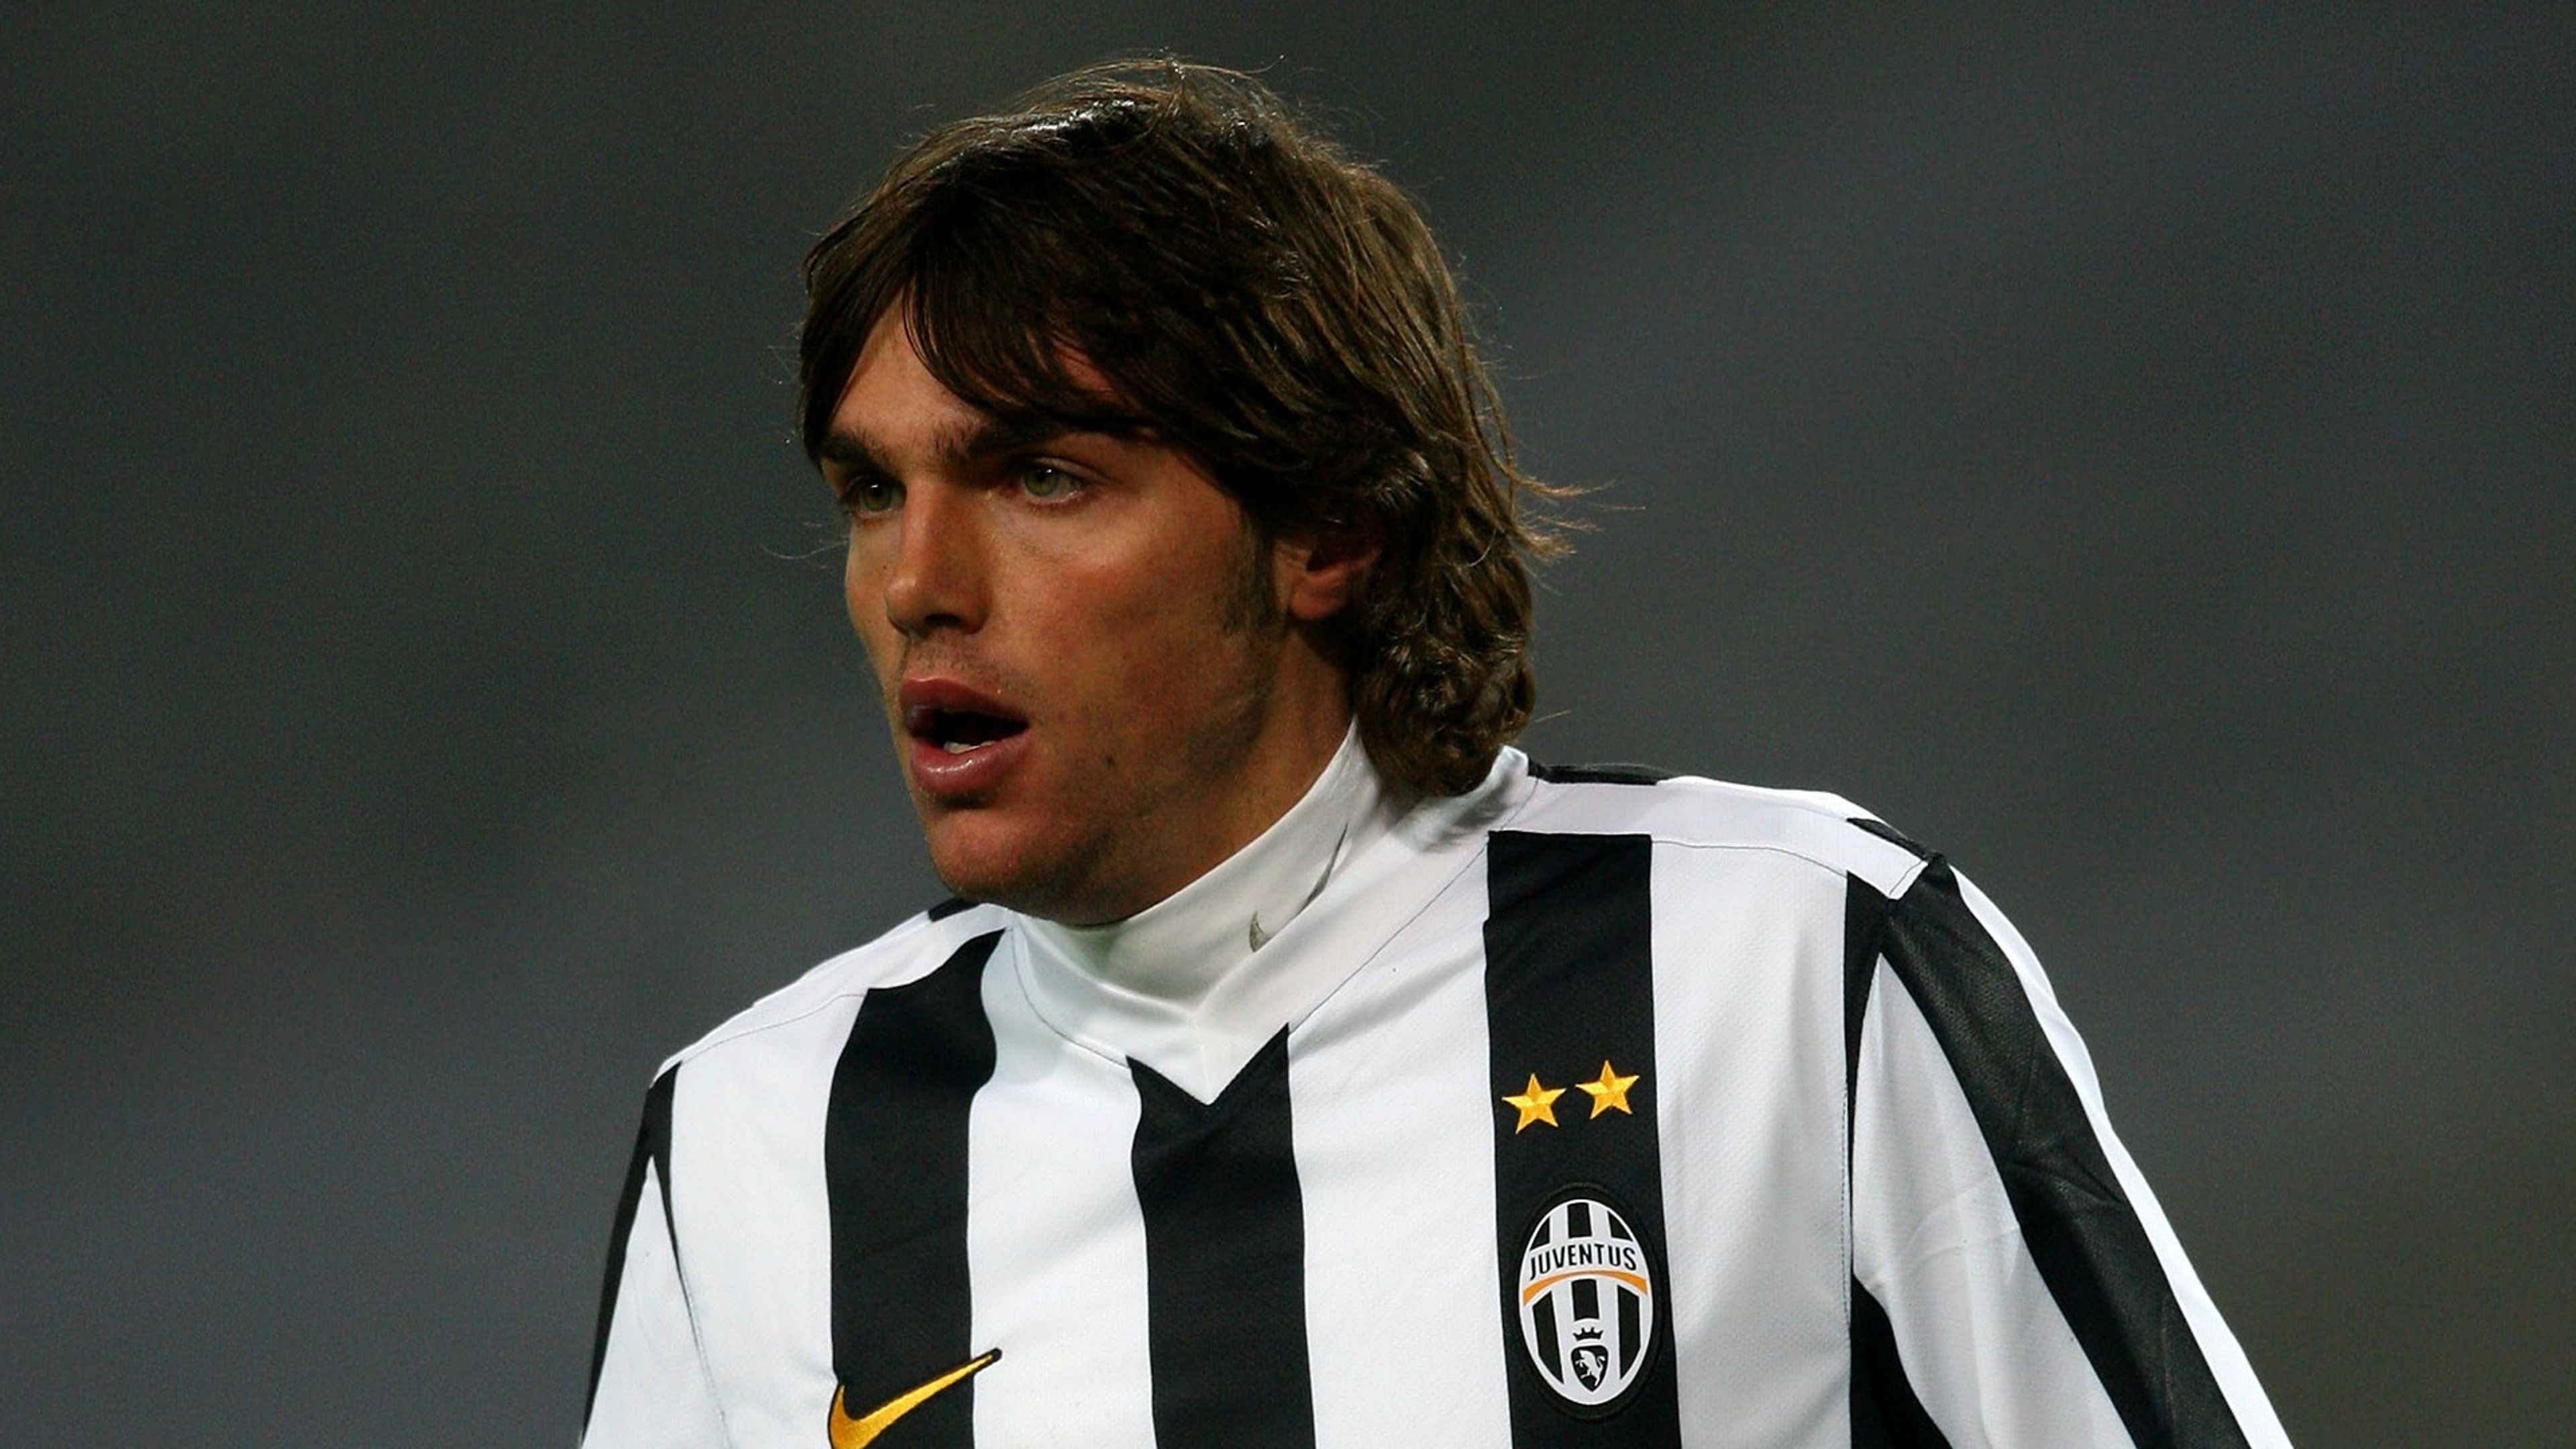 De Ceglie Juventus 2010